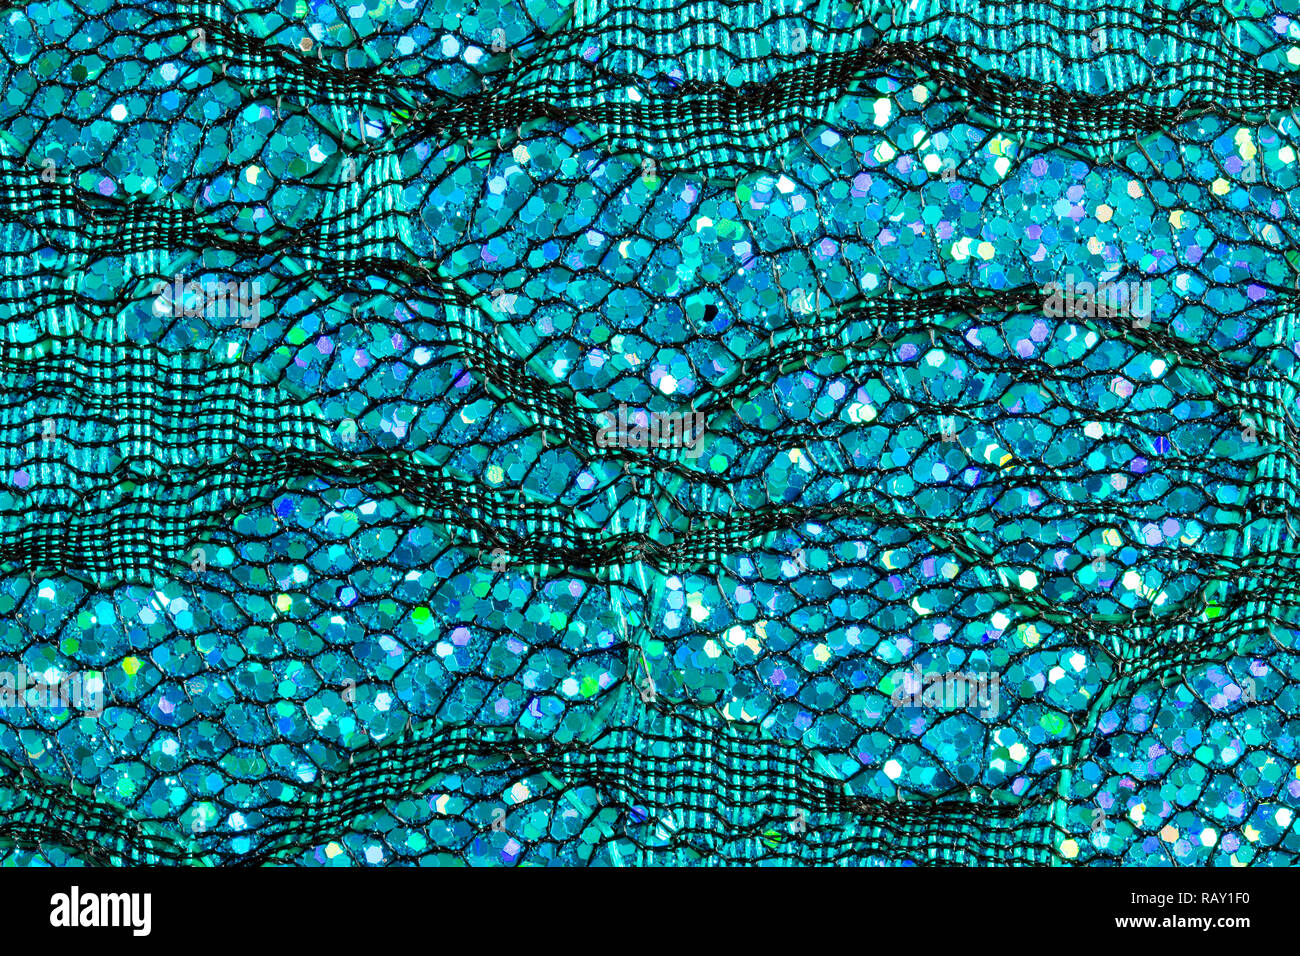 Résumé fond de paillettes bleu sur la dentelle qui ressemble à de l'eau ou les écailles de poisson Banque D'Images